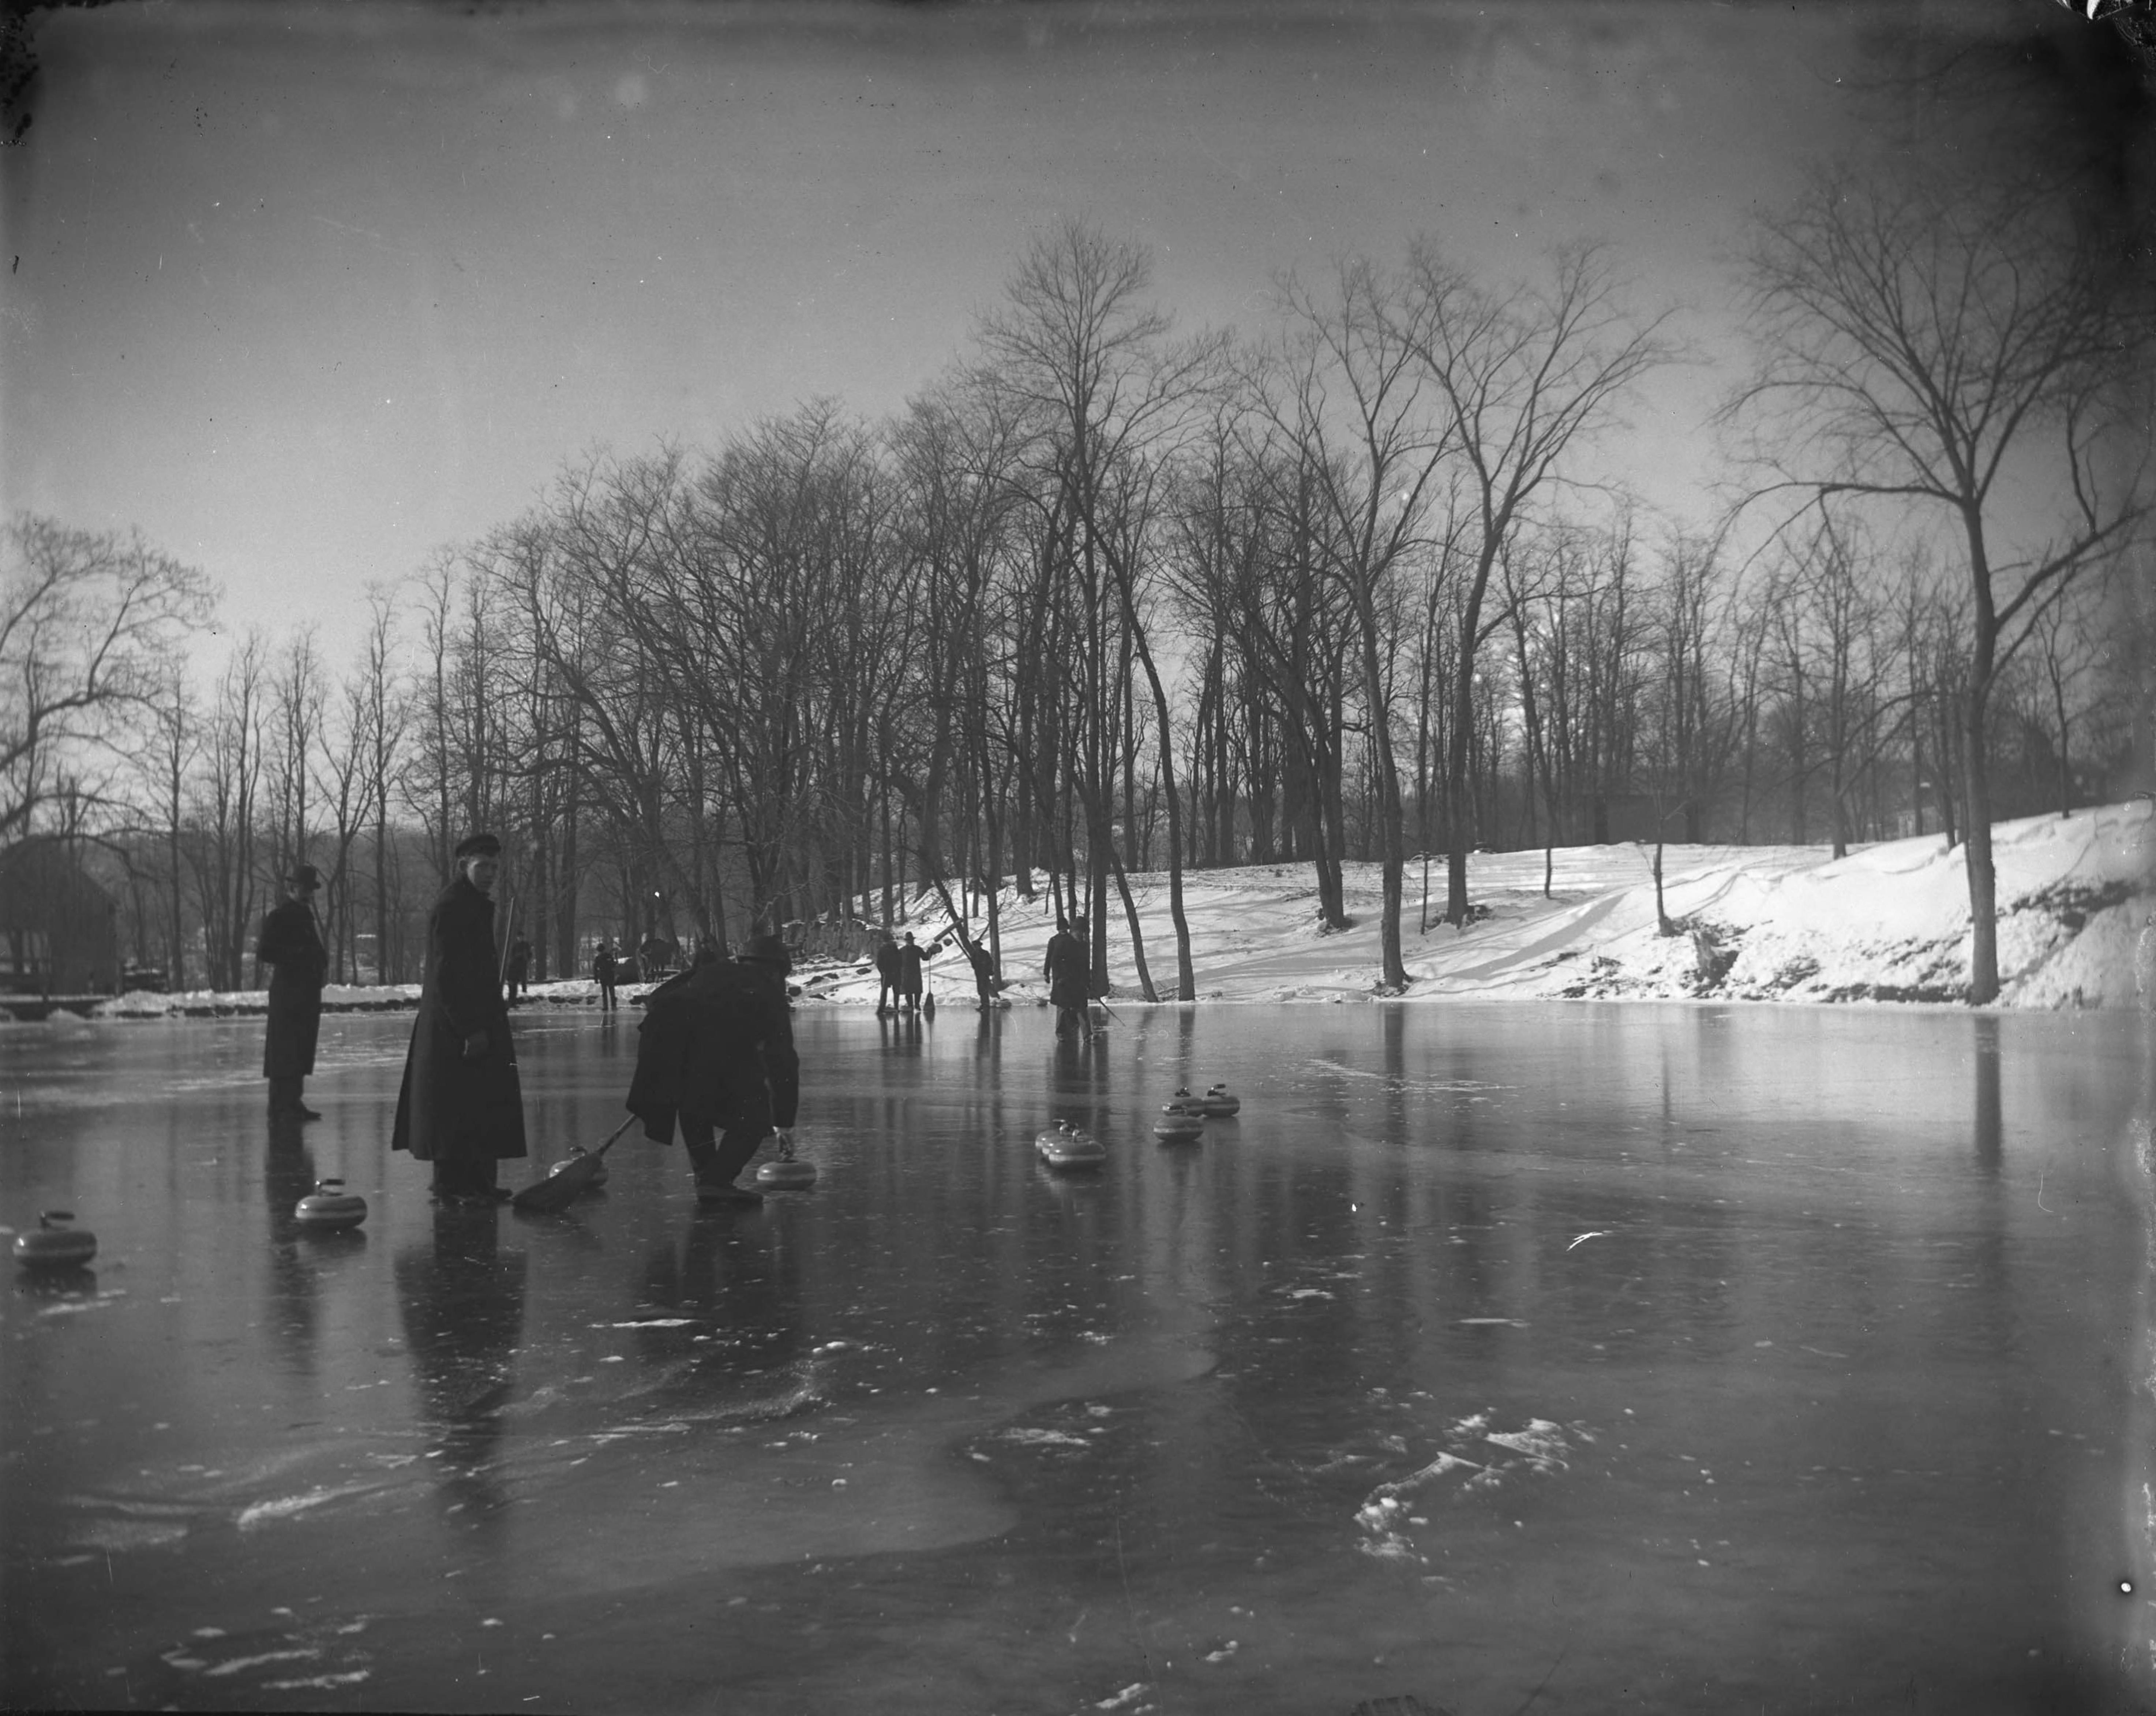 Curling on Van Cortlandt Lake, Van Cortlandt Park, Bronx, N.Y., February 1902.